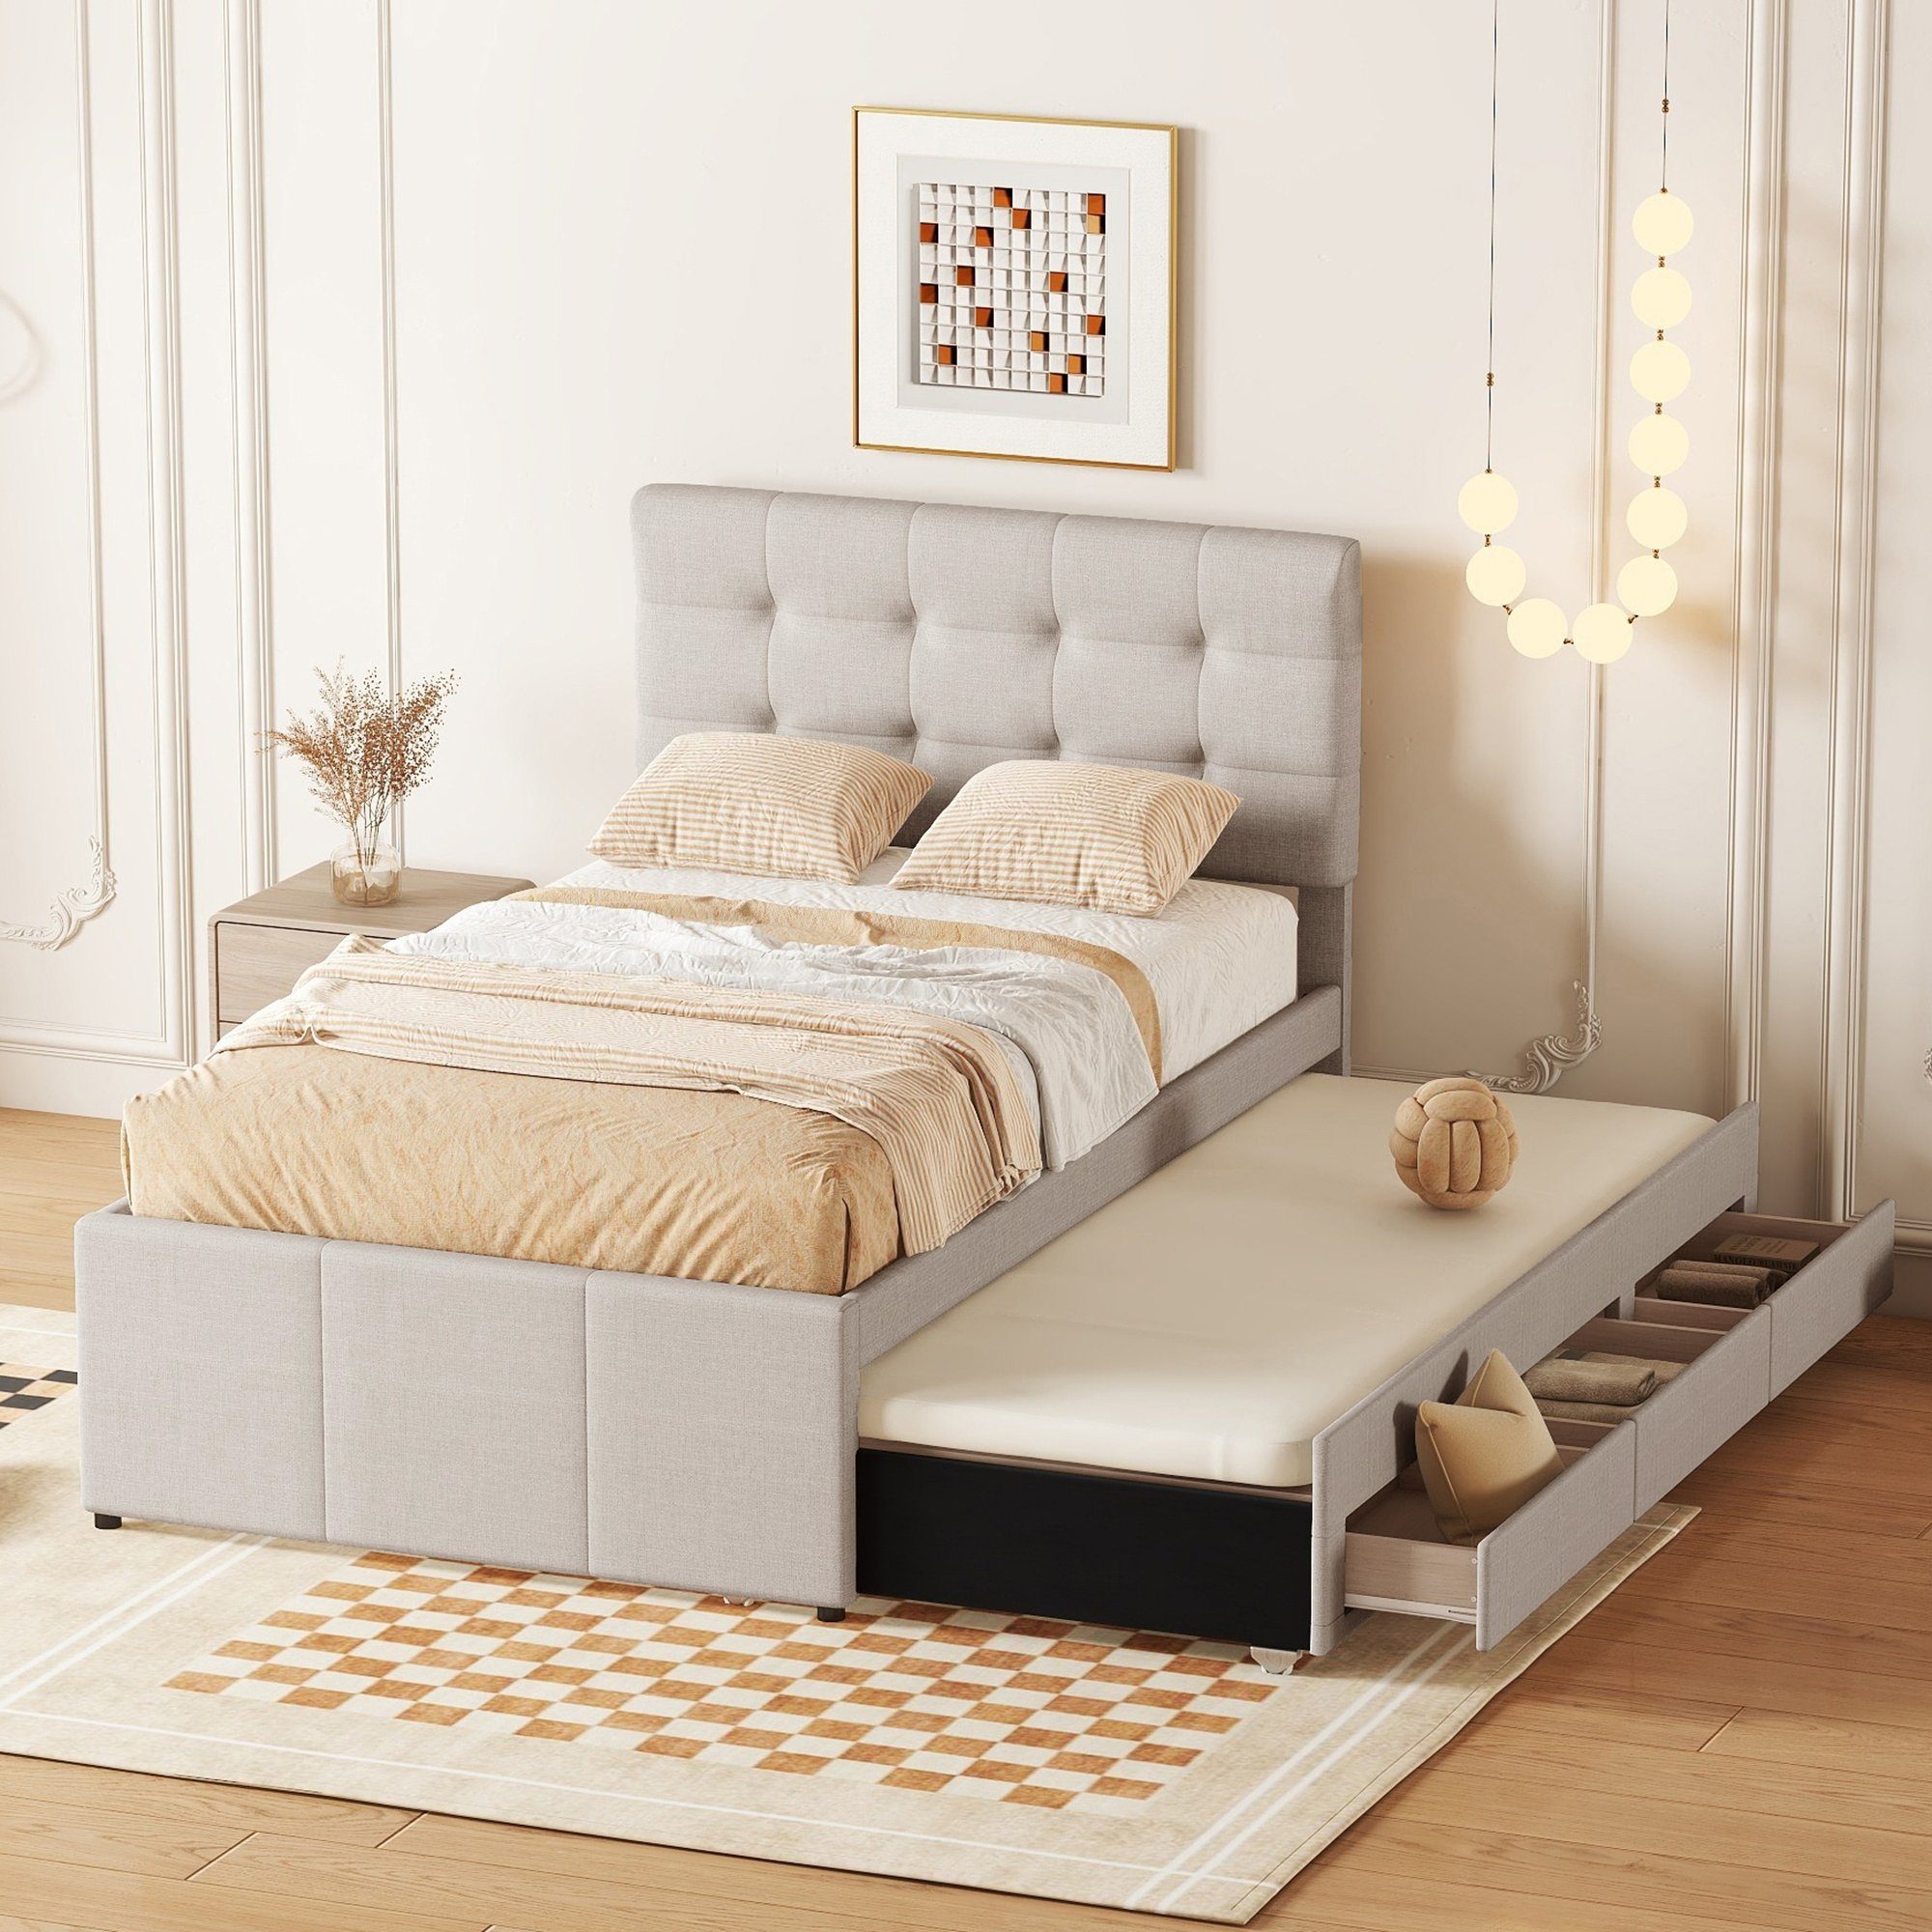 Ulife Polsterbett Doppelbett ausziehbares Bett Familienbett, Verstellbares Kopfteil, mit drei Schubladen, 90 x 200 cm